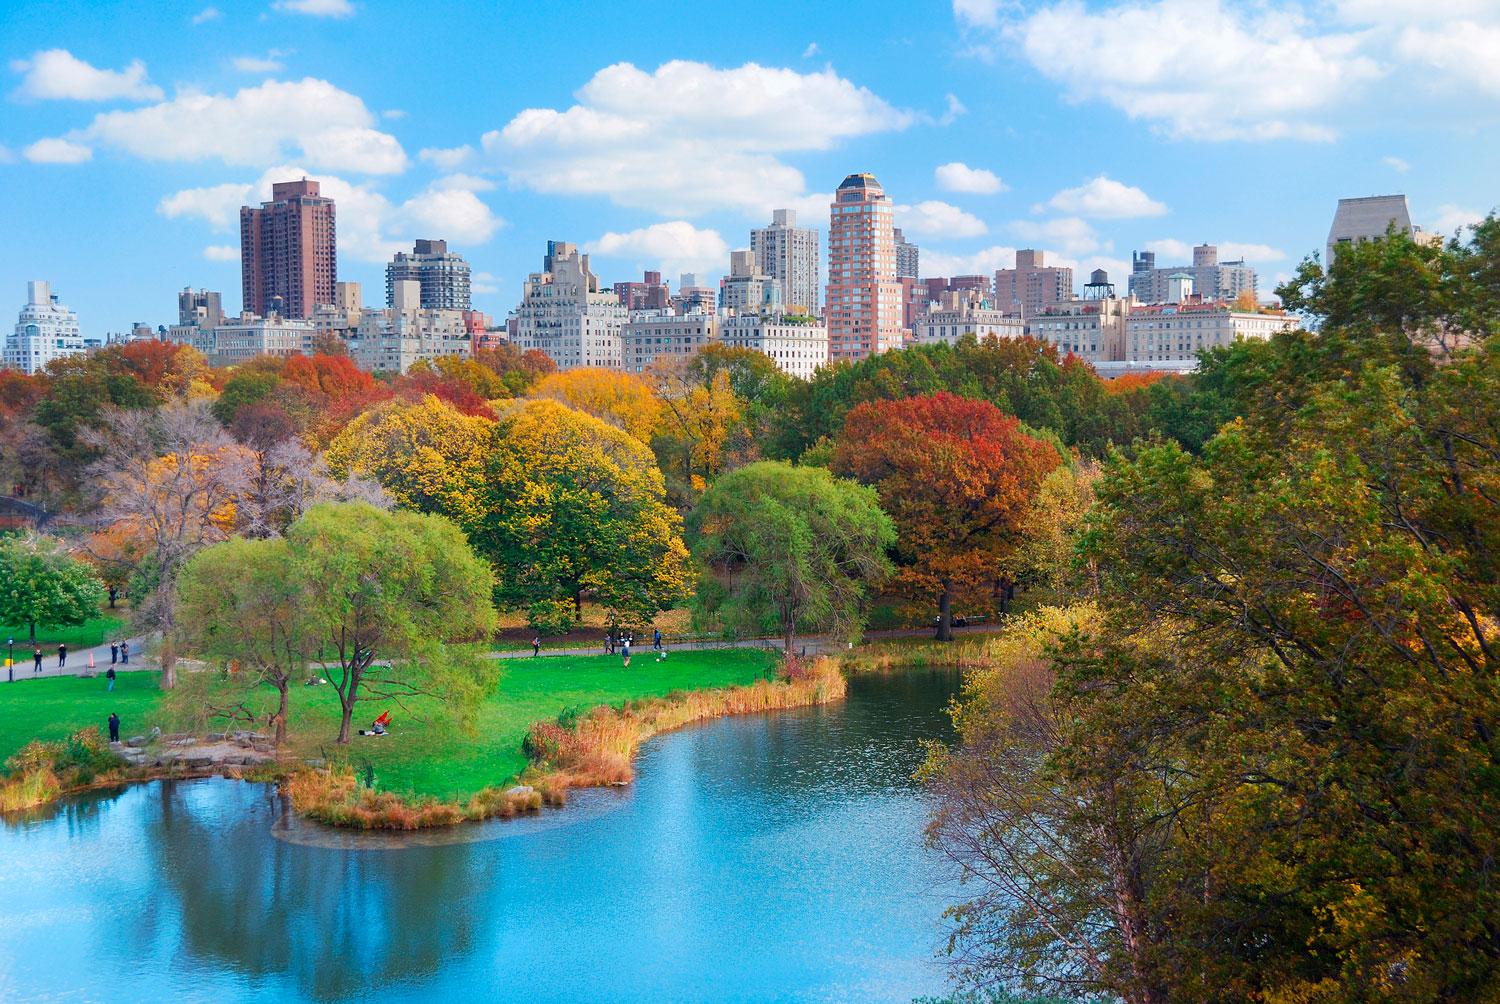 7. Central Park i New York syns ofta i bilddelningsappen.